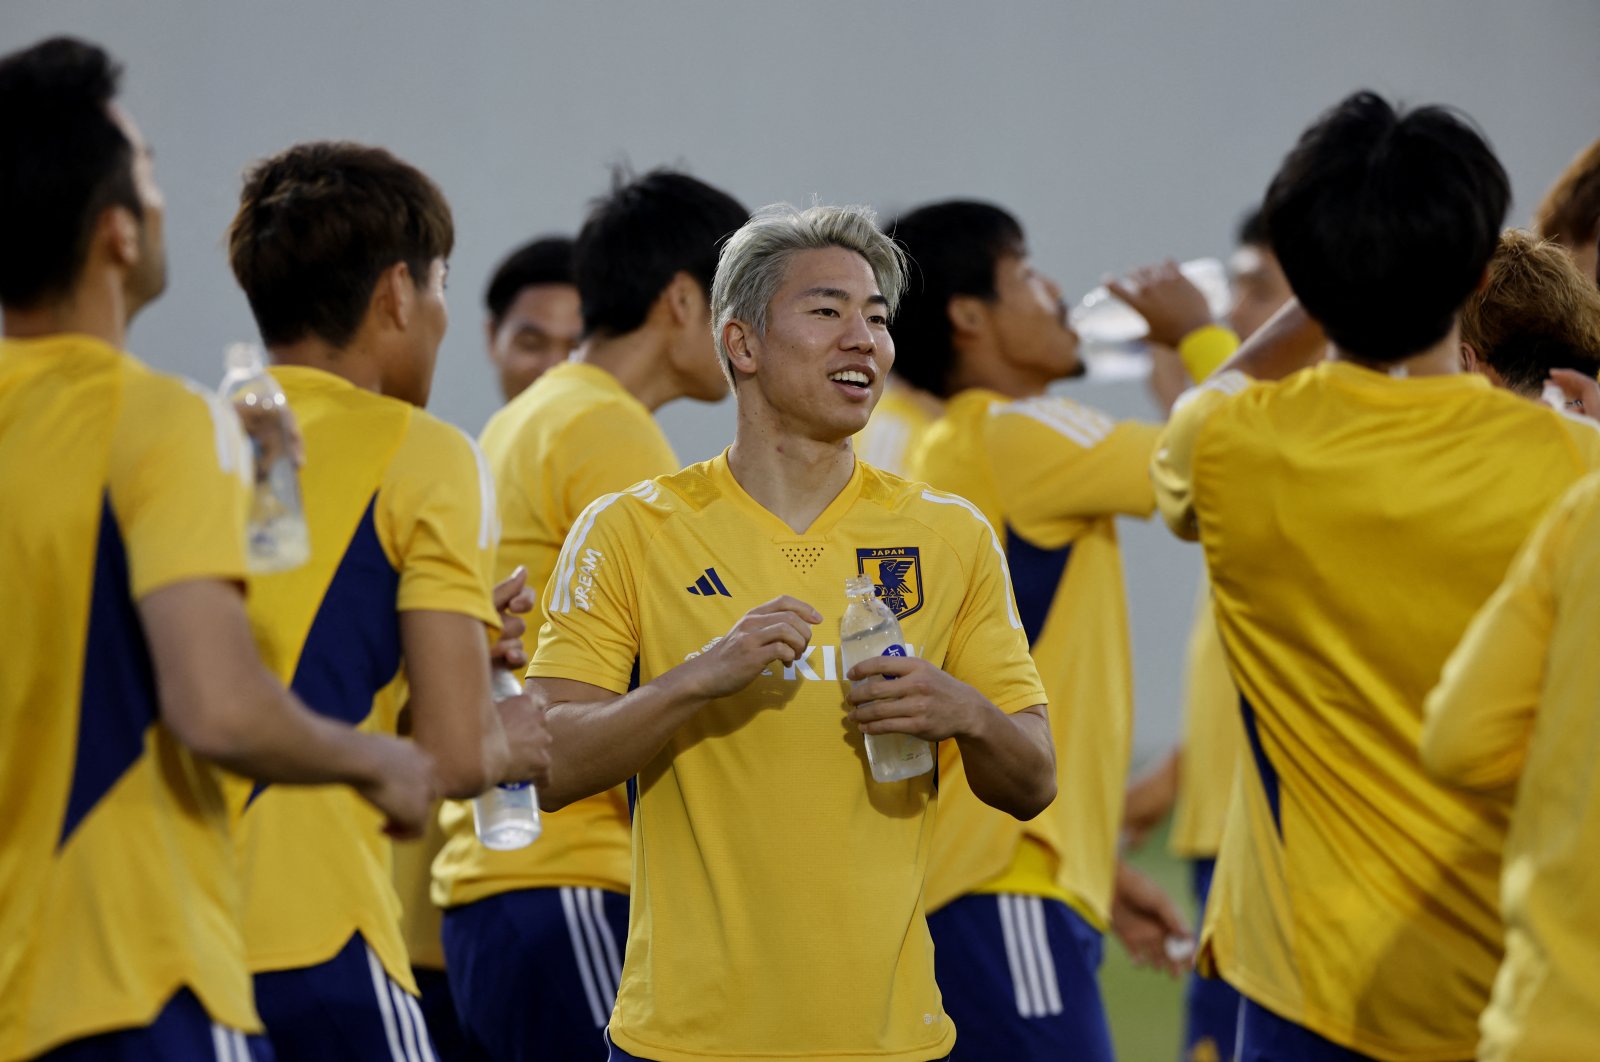 Kubu Jepang optimis jelang pertandingan Jerman, Leroy Sane absen